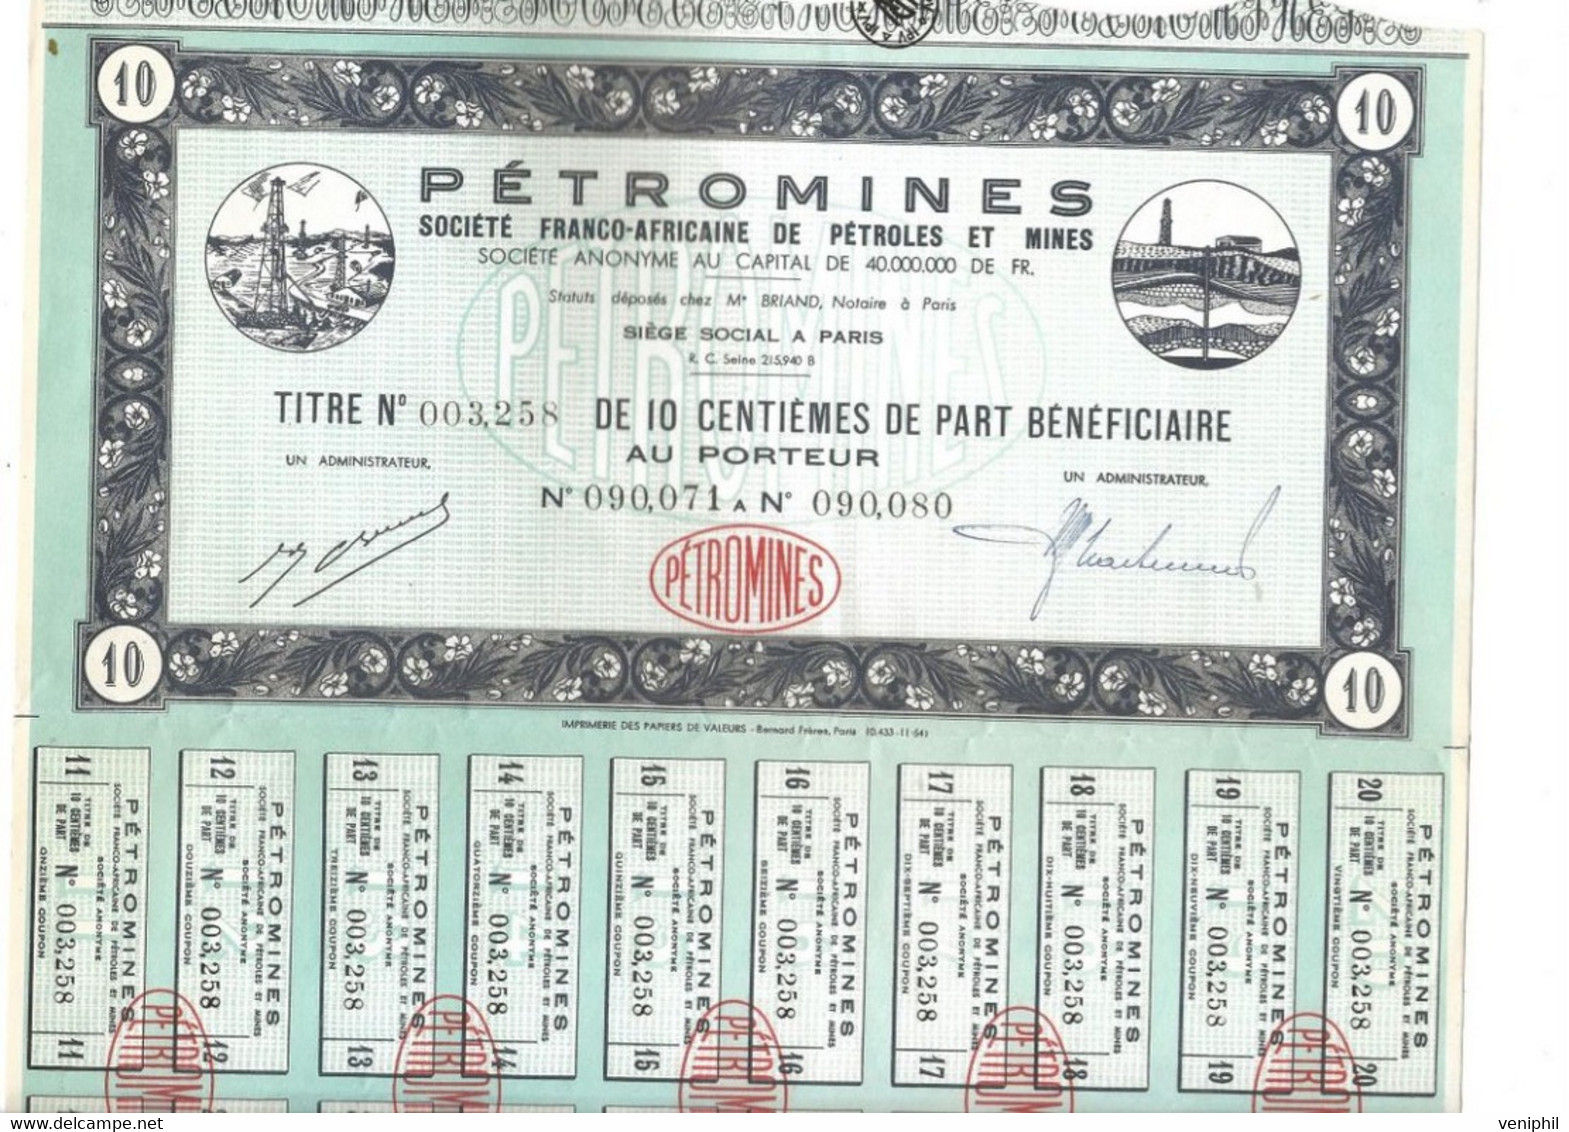 PETROMINES -SOCIETE FRANCO-AFRICAINE DE PETROLES ET MINES - TITRES DE 10 CENTIEMES DE PART - - Oil